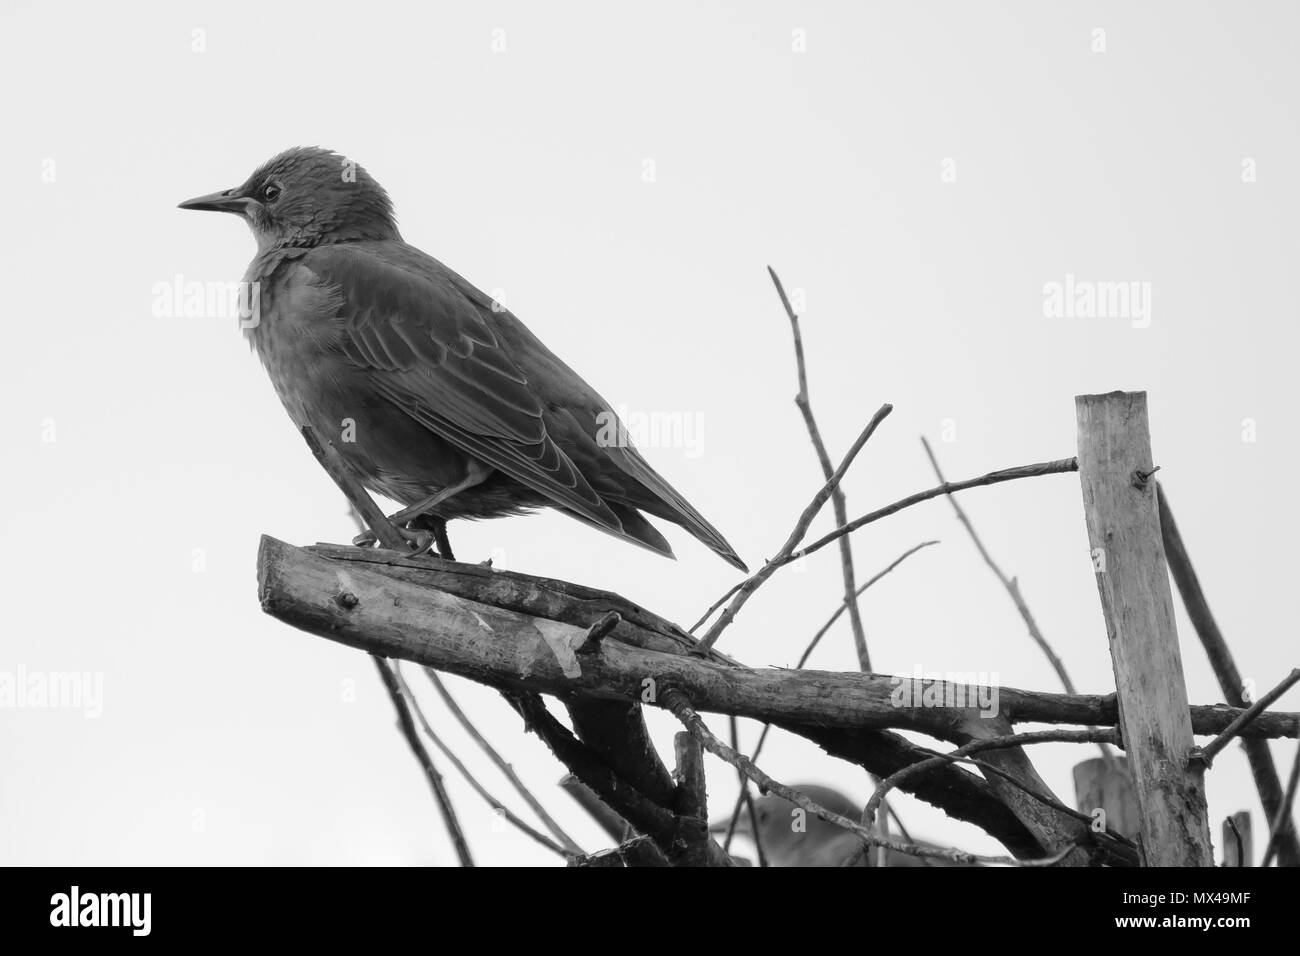 Der junge Starling sah auf einem Gartenbaum sitzen und darauf warten, dass seine Eltern ihm Nahrung aus einem nahe gelegenen Garten zurückbringen. Stockfoto